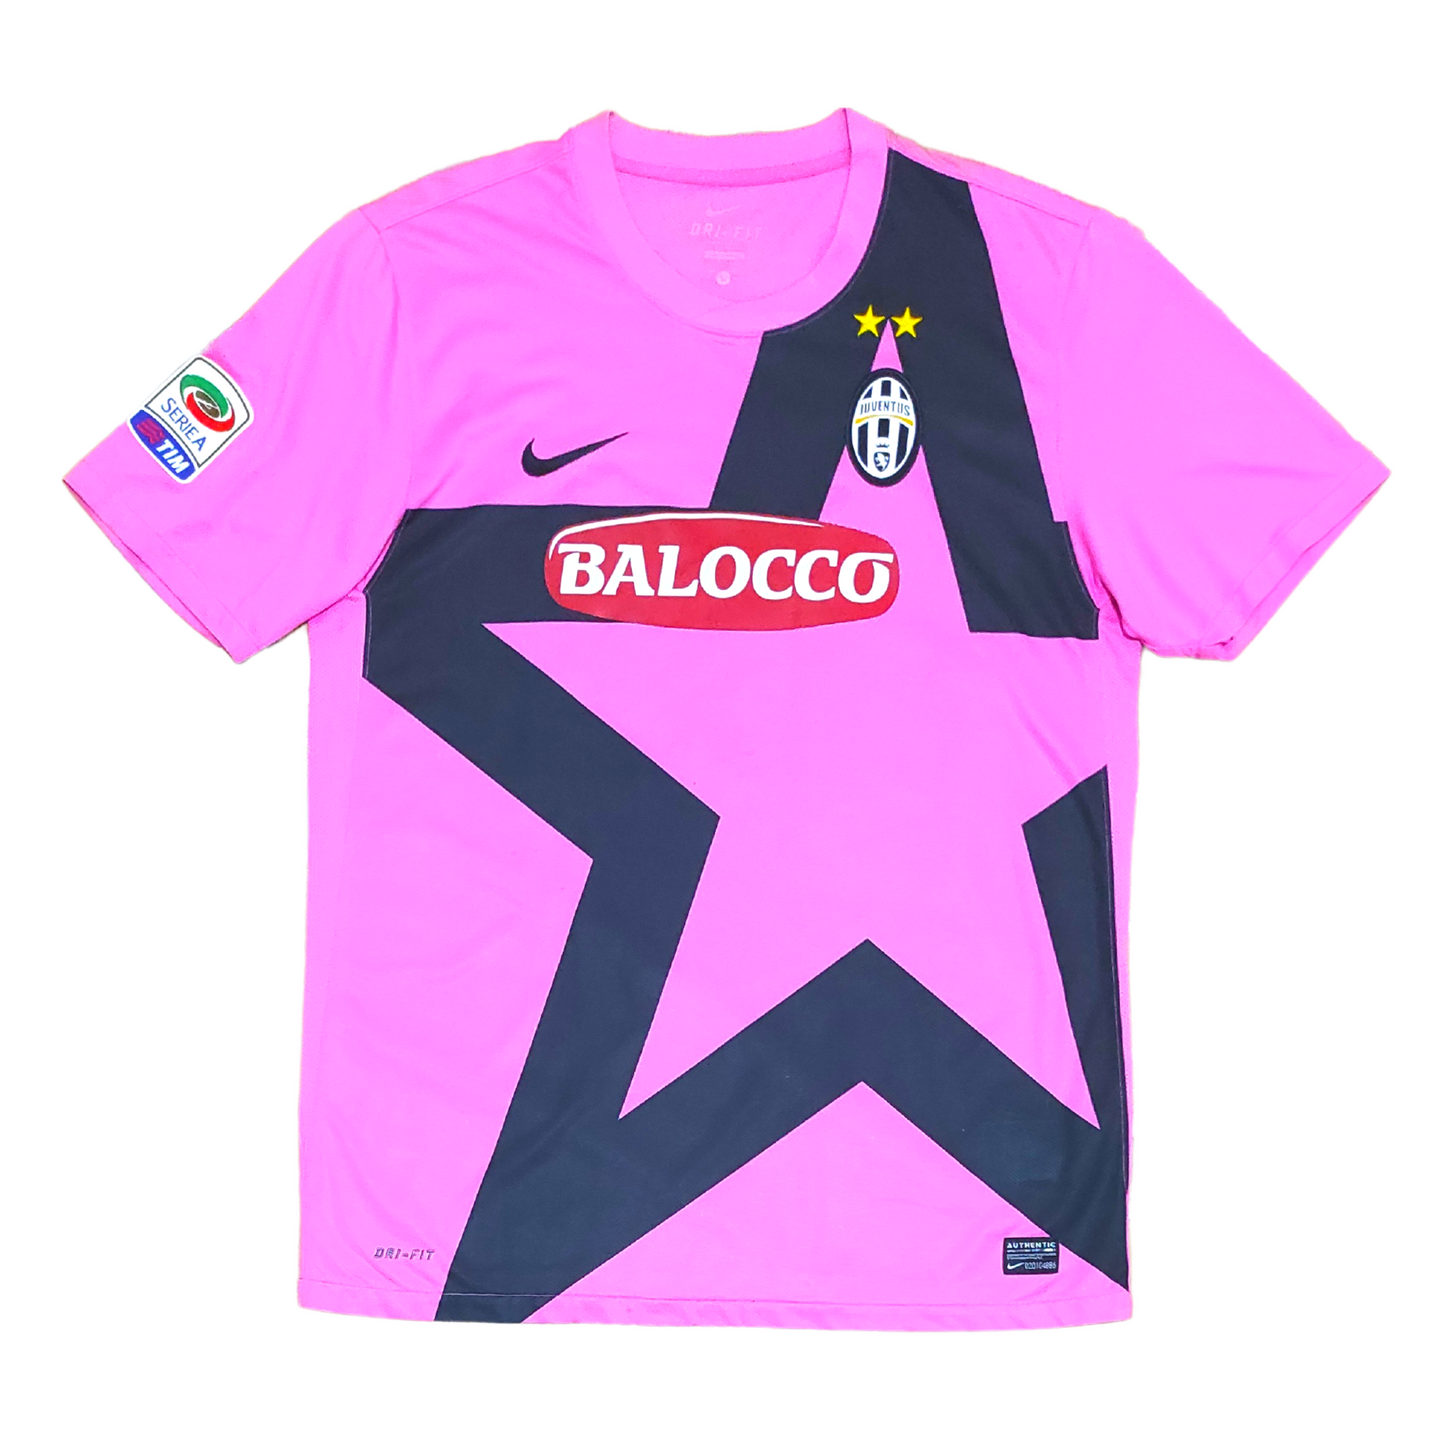 Juventus Away Shirt 2011-2012 Delpiero (M)